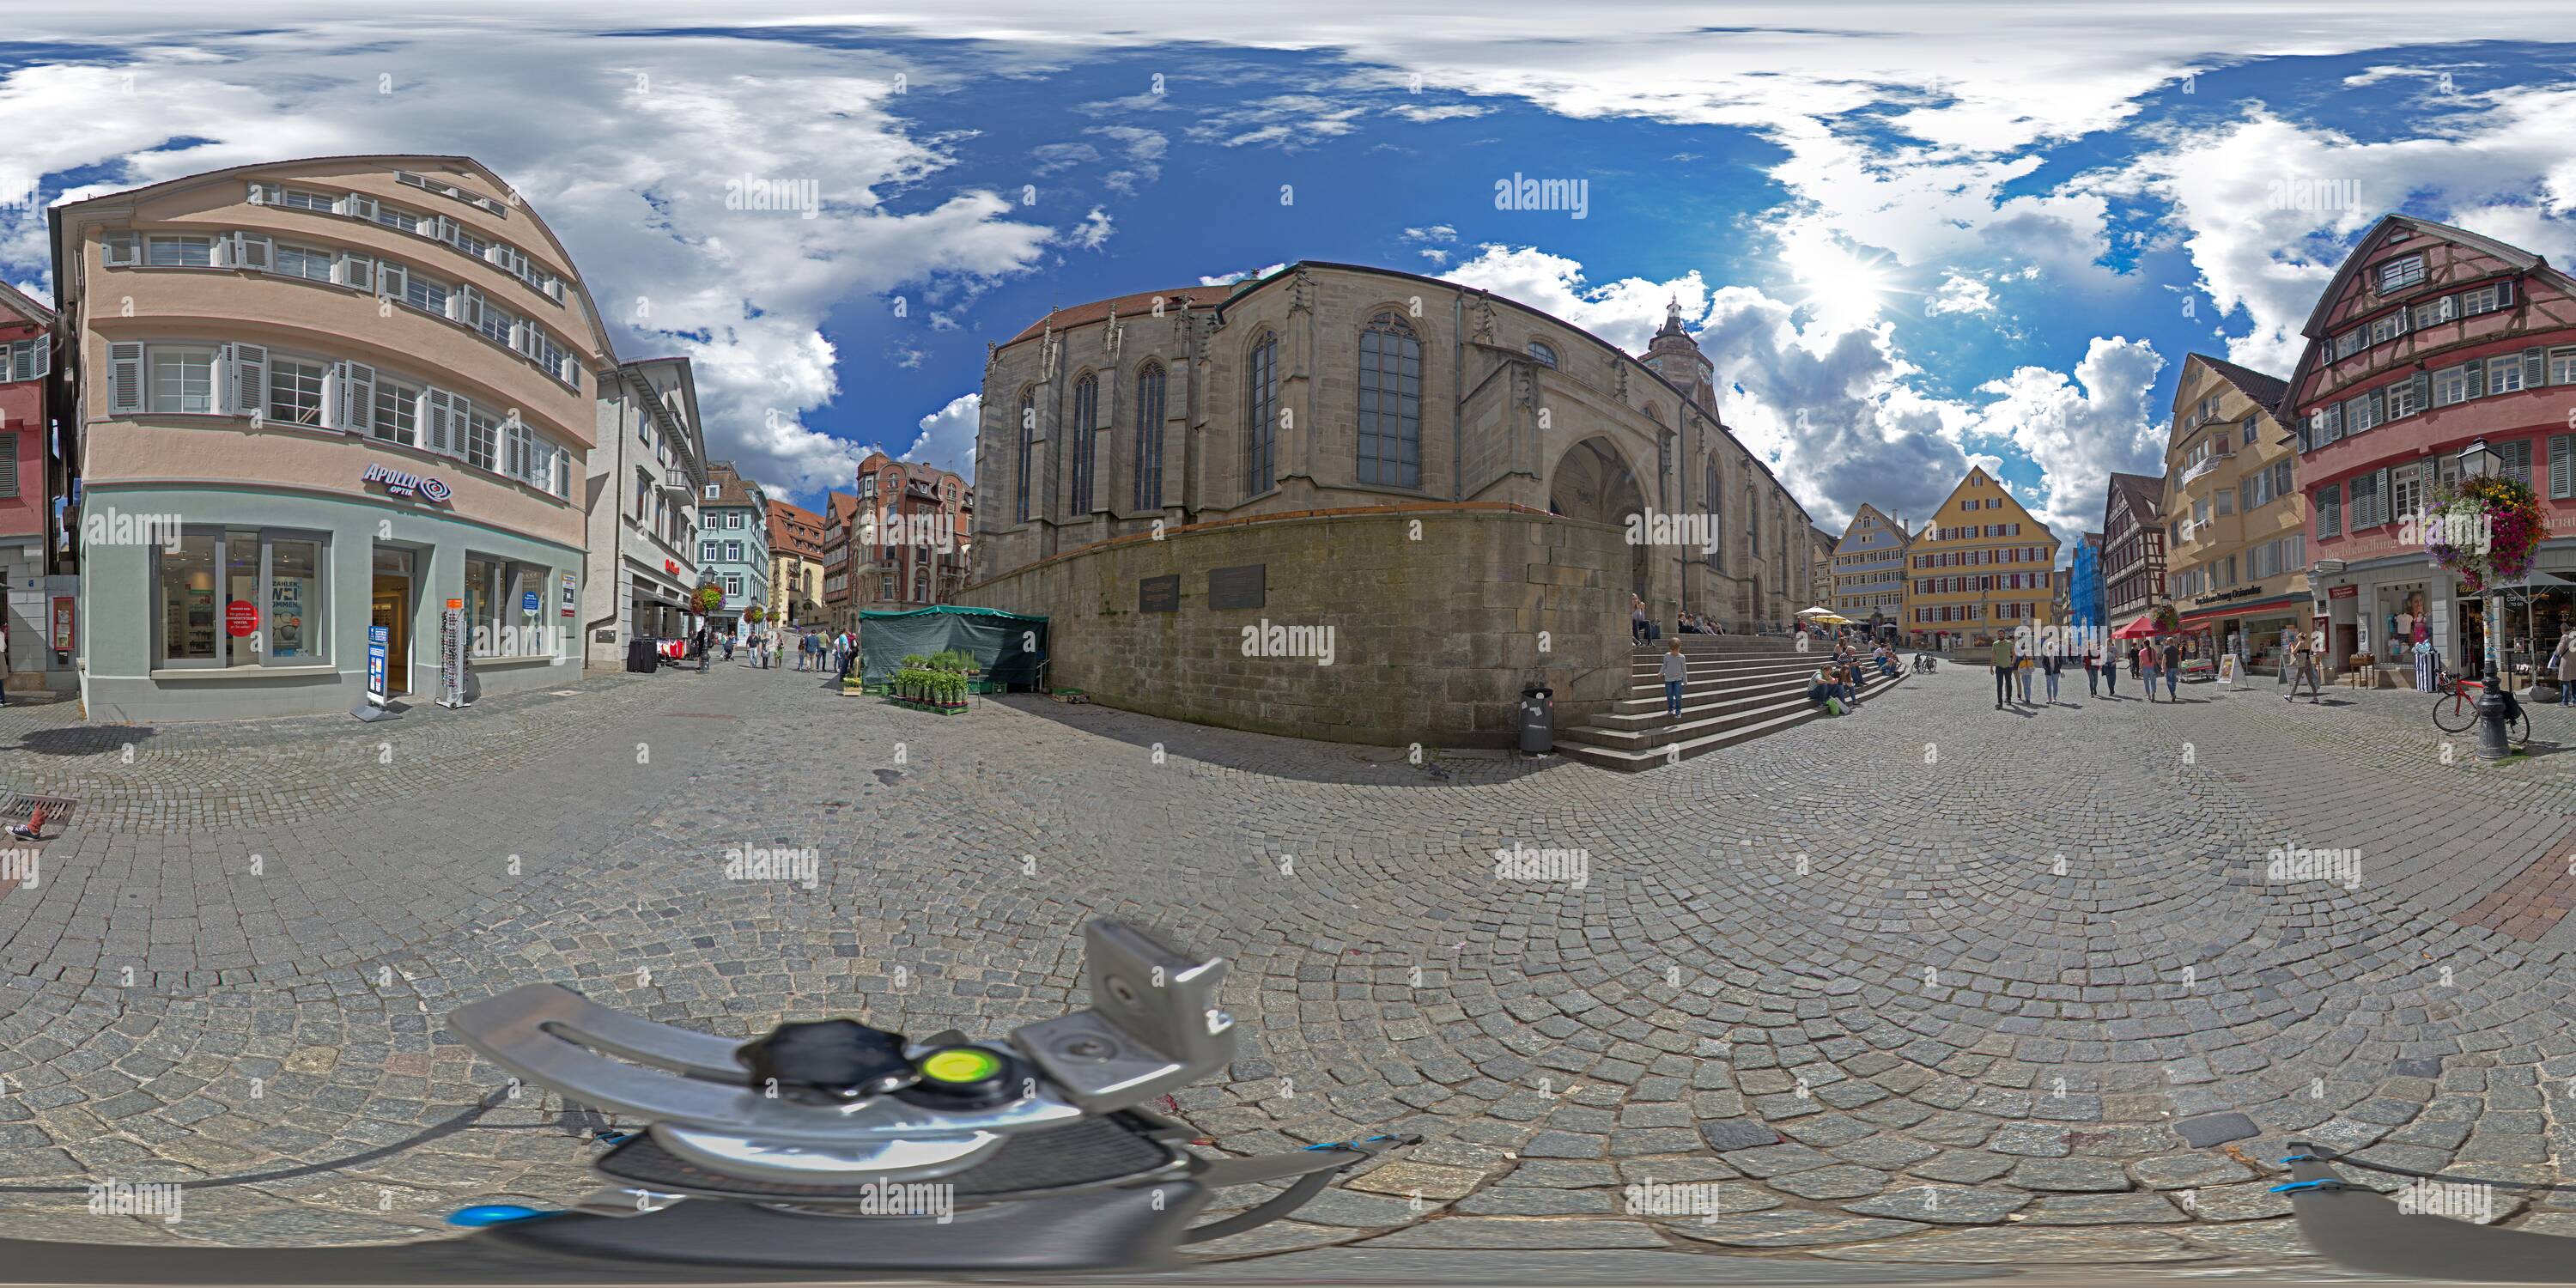 Vue panoramique à 360° de Photo à 360 degrés, Holzmarkt (marché du bois) avec église (Stiftskirche St. Georg) et librairie Heckenhauer, Tuebingen, Bade-Wurtemberg, Allemagne